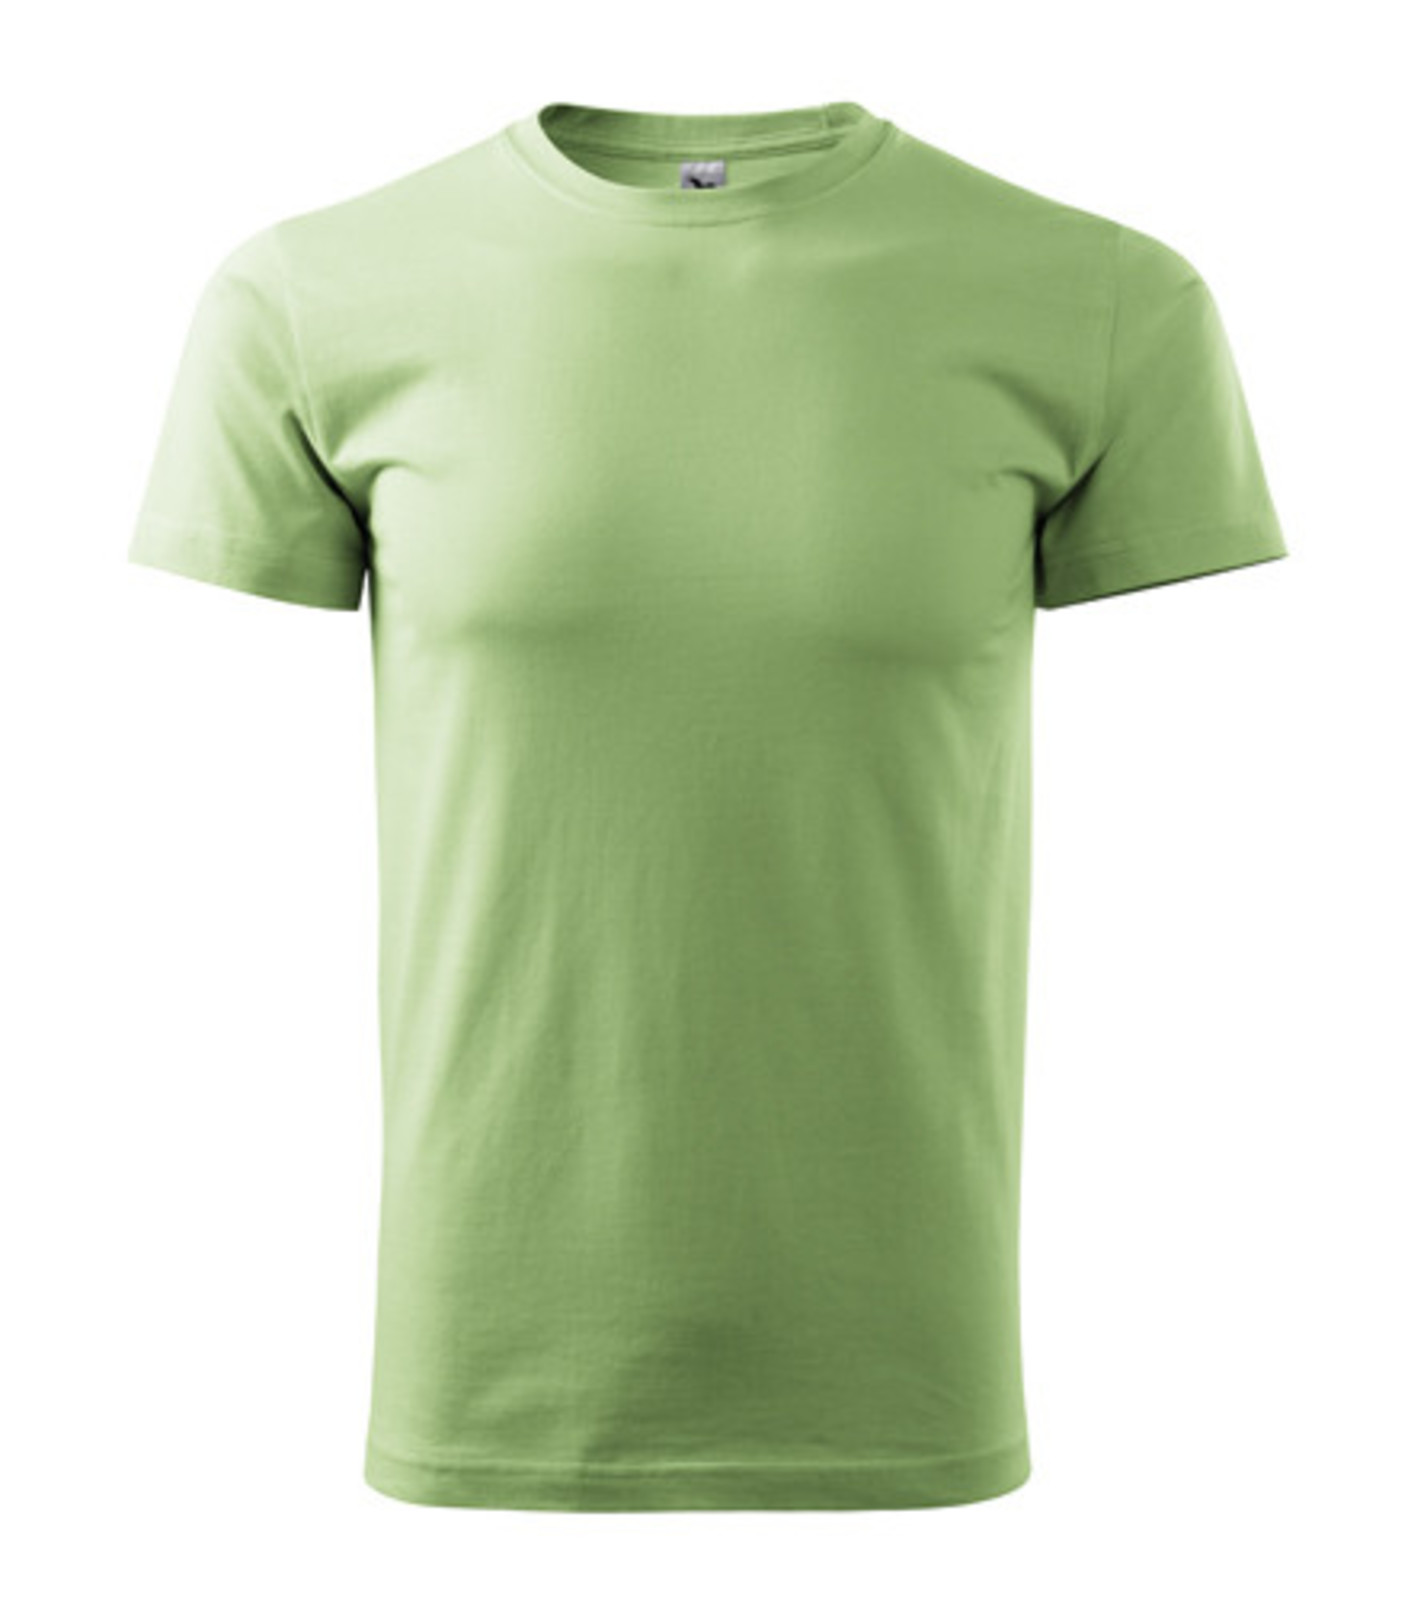 Pánske tričko Malfini Basic 129 - veľkosť: S, farba: hráškovo zelená